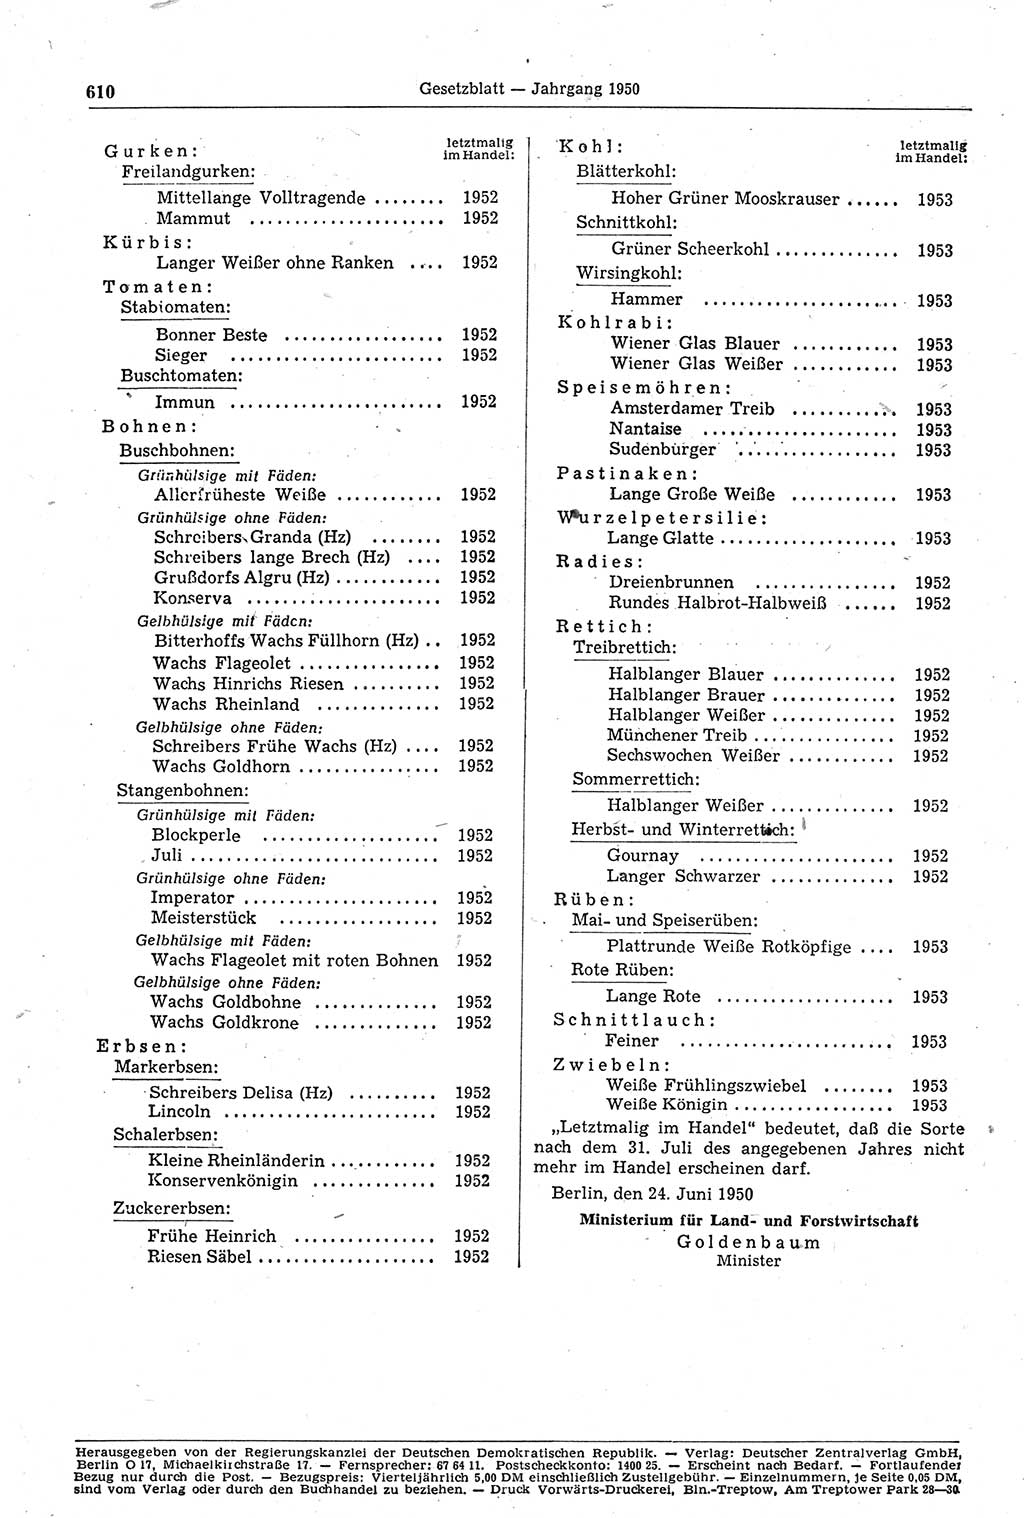 Gesetzblatt (GBl.) der Deutschen Demokratischen Republik (DDR) 1950, Seite 610 (GBl. DDR 1950, S. 610)